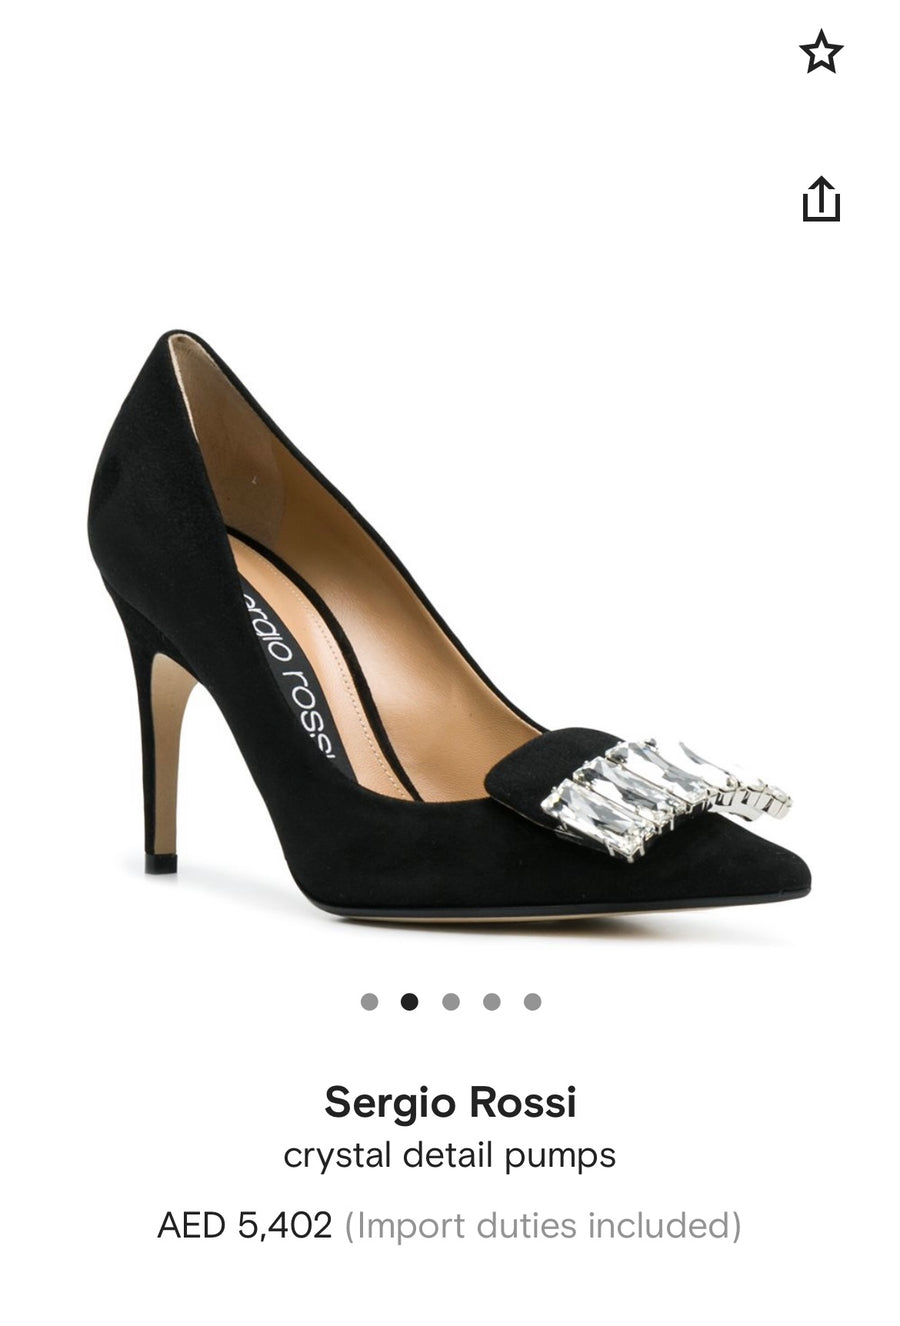 Sergio Rossi Beige Satin Crystal Embellished Pumps Size 37